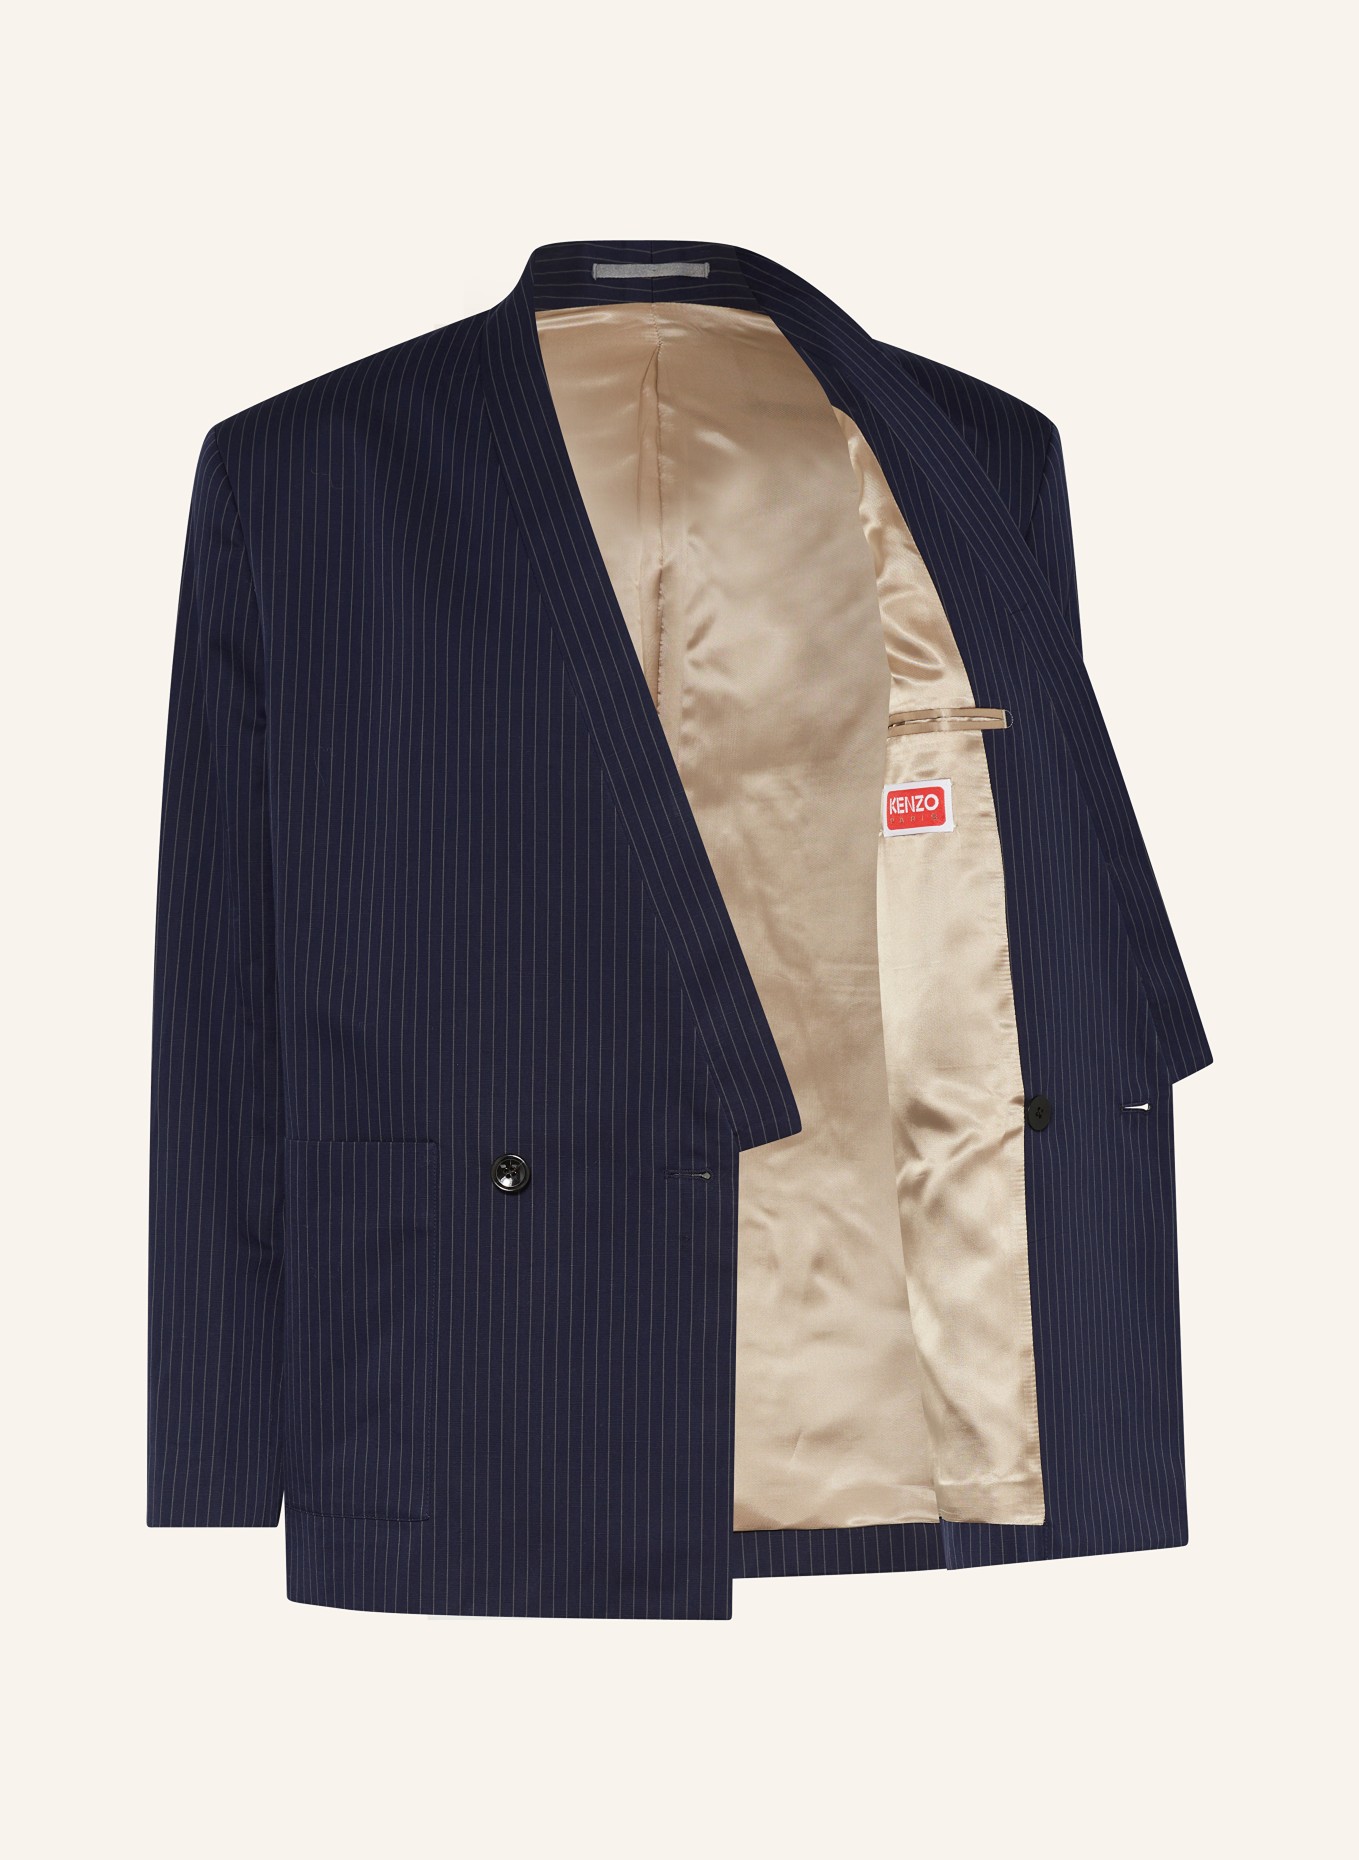 KENZO Tailored jacket regular fit, Color: DARK BLUE/ BEIGE (Image 4)